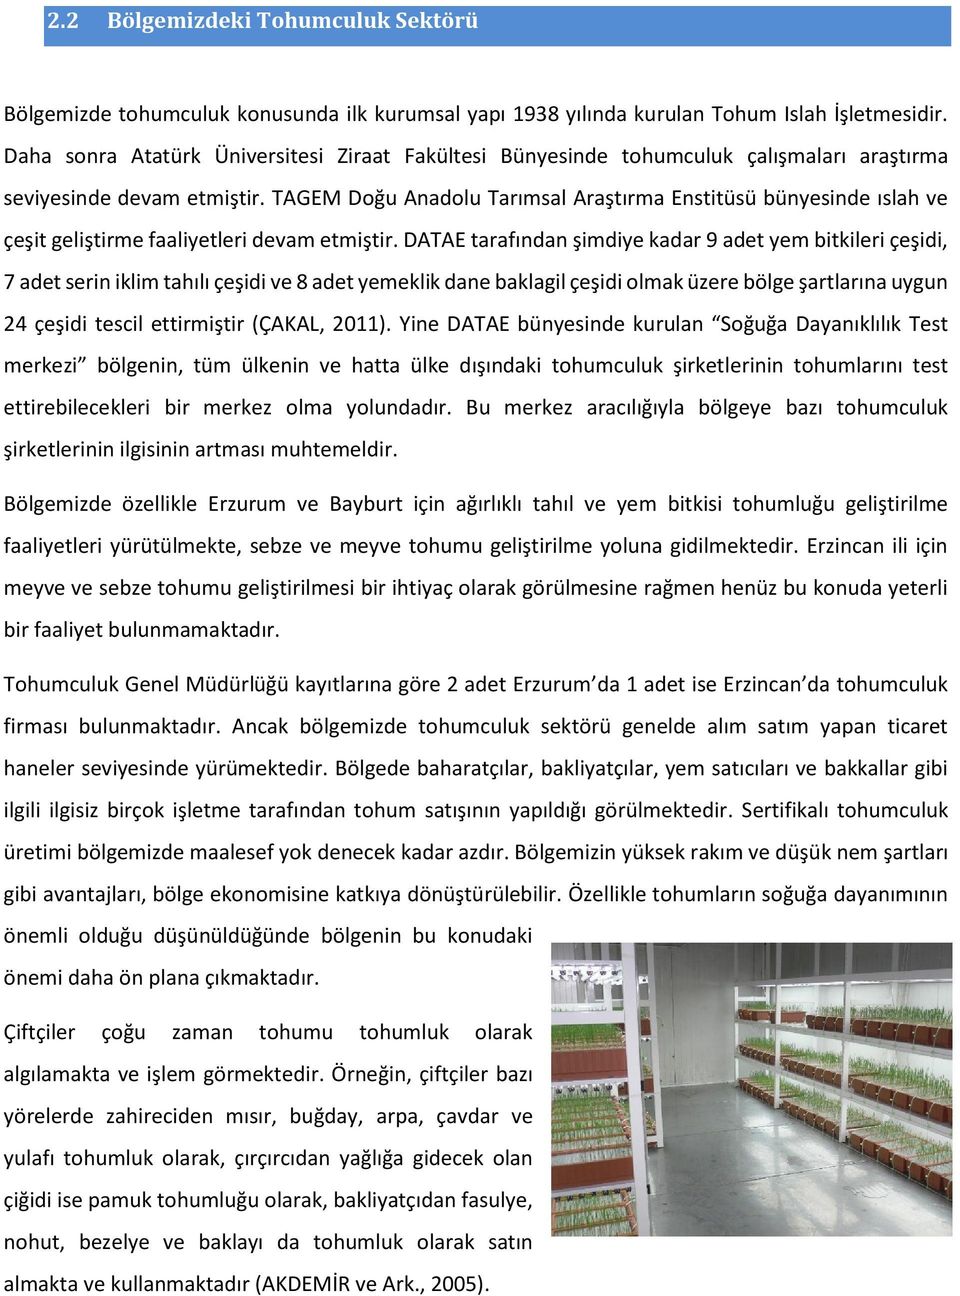 TAGEM Doğu Anadolu Tarımsal Araştırma Enstitüsü bünyesinde ıslah ve çeşit geliştirme faaliyetleri devam etmiştir.